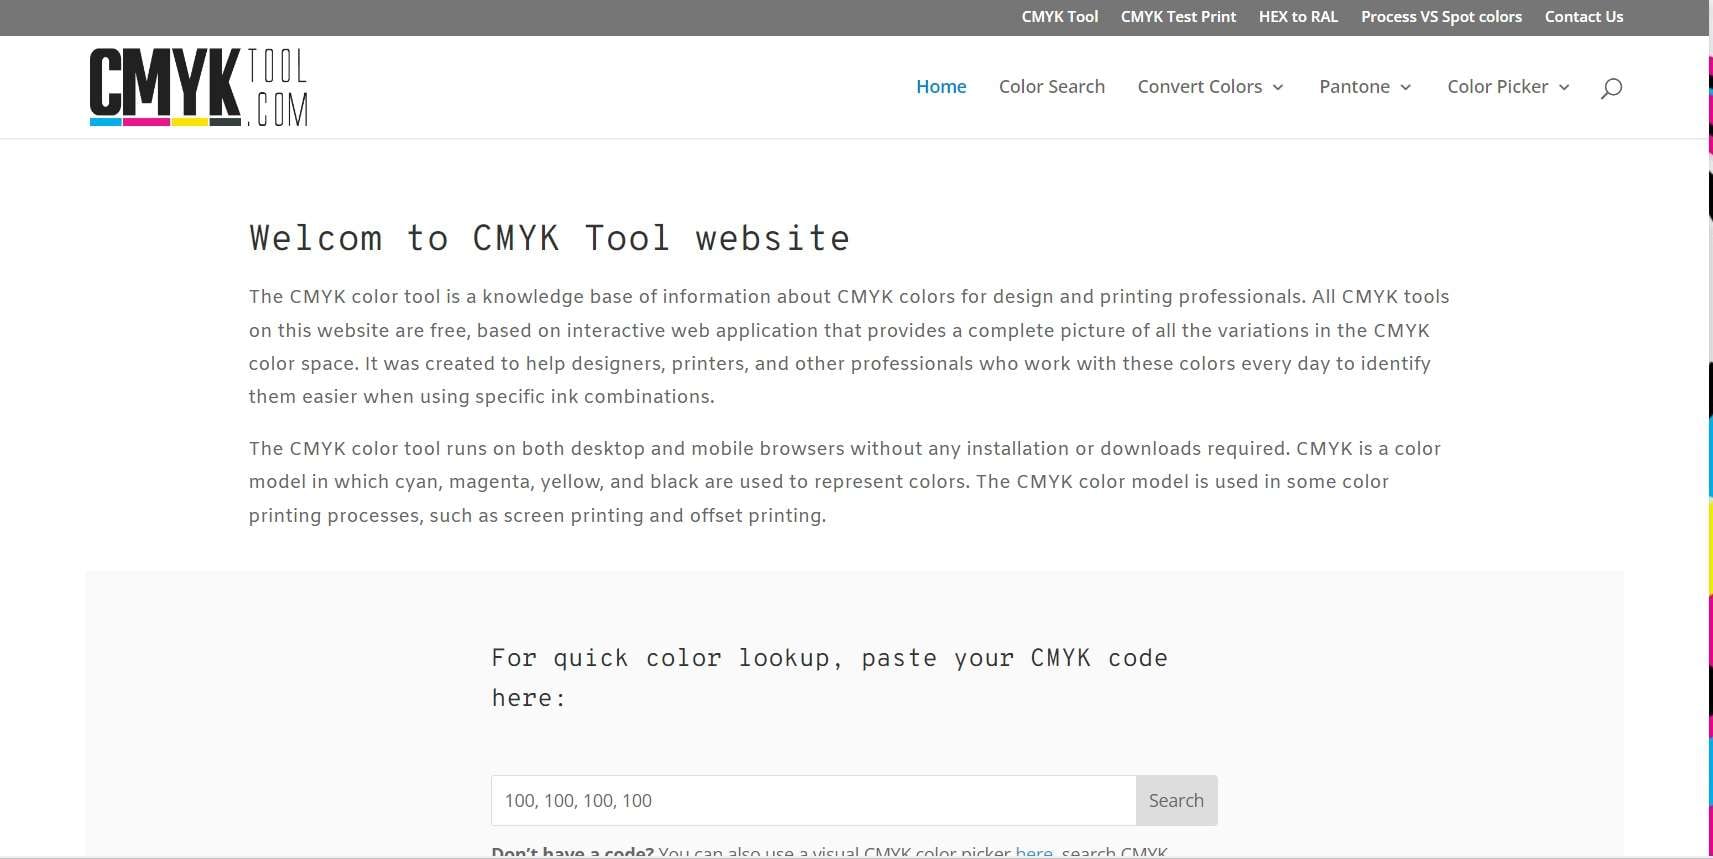 interfaz cmyk tool